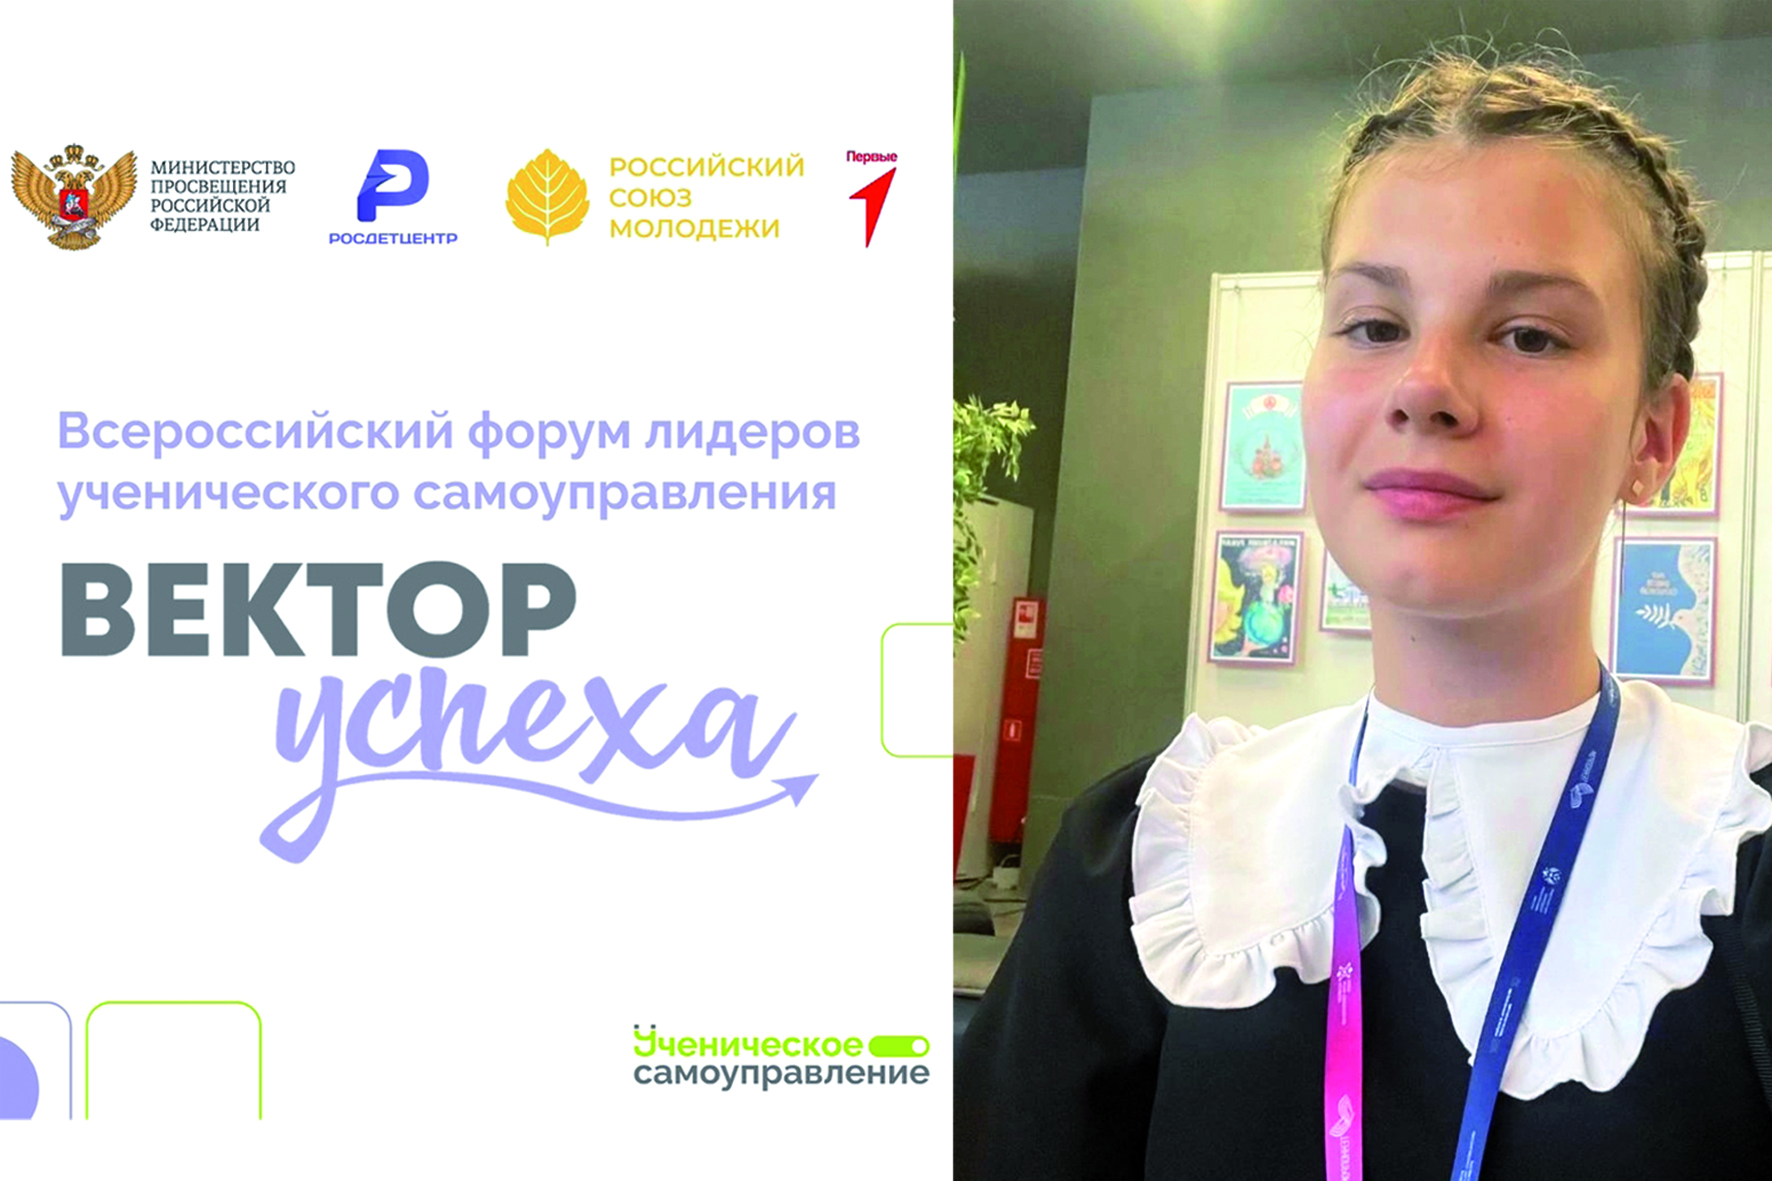 В «Океан» новых знаний и эмоций сможет окунуться школьница из Татарска